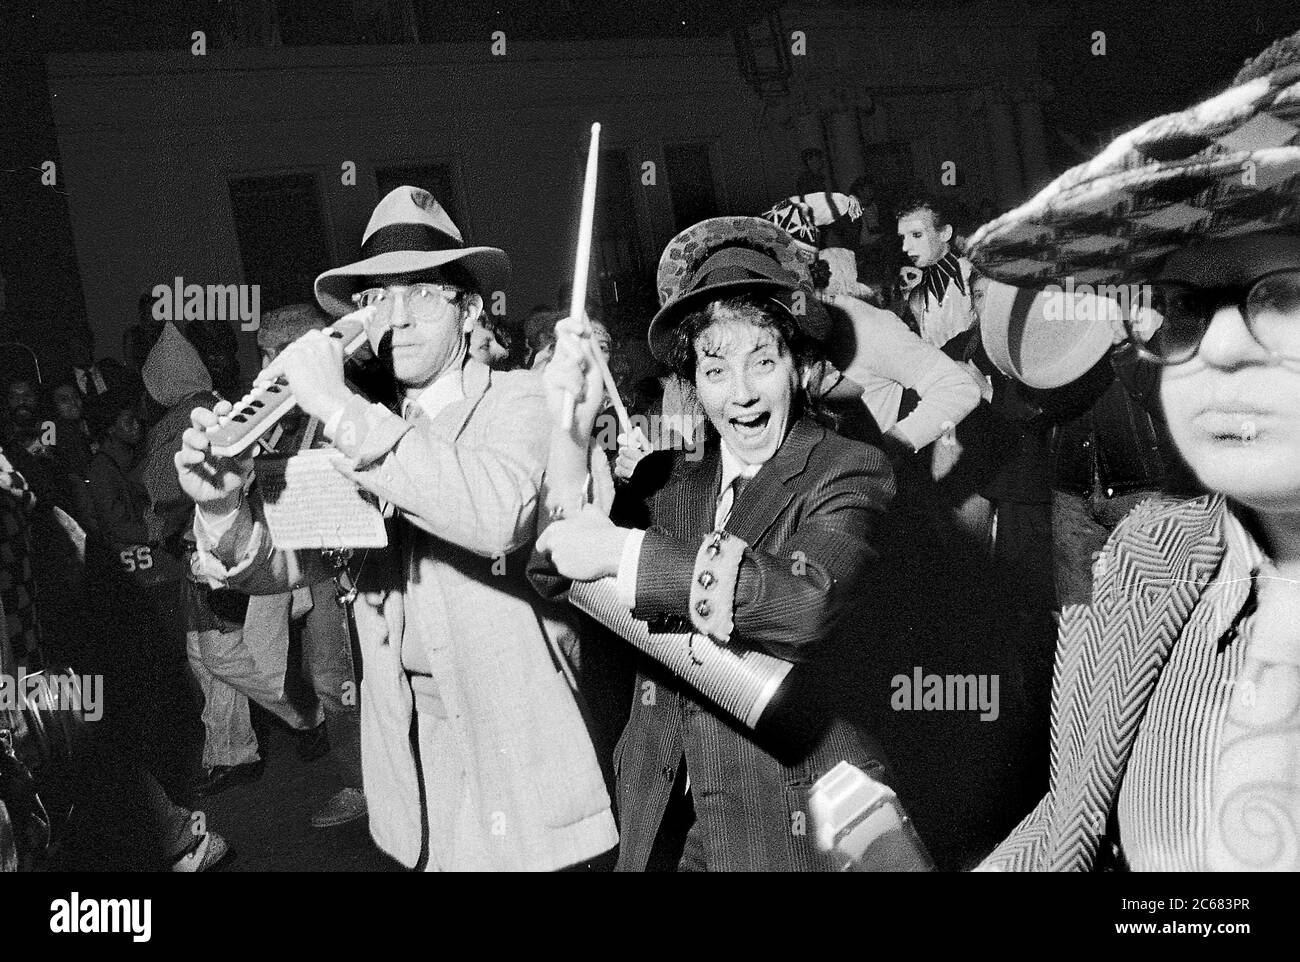 Membri della Marching Band alla Greenwich Village Halloween Parade, New York City, USA negli anni '80 fotografati con film in bianco e nero di notte. Foto Stock